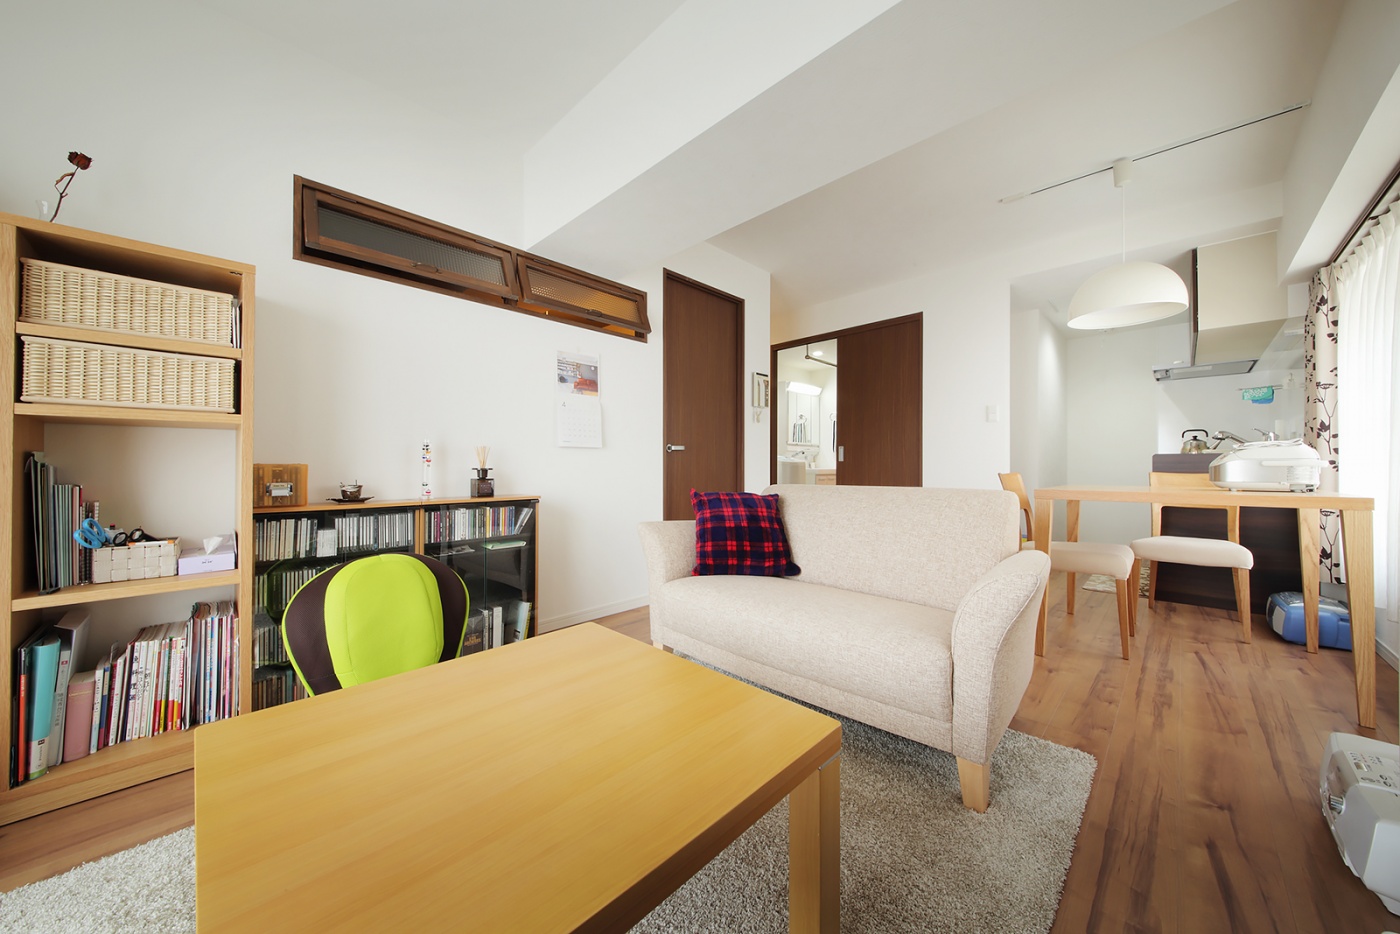 シンプルな暮らしをテーマにした空間は、大きな家具を置かず、コンパクトで居心地よくコーディネート。